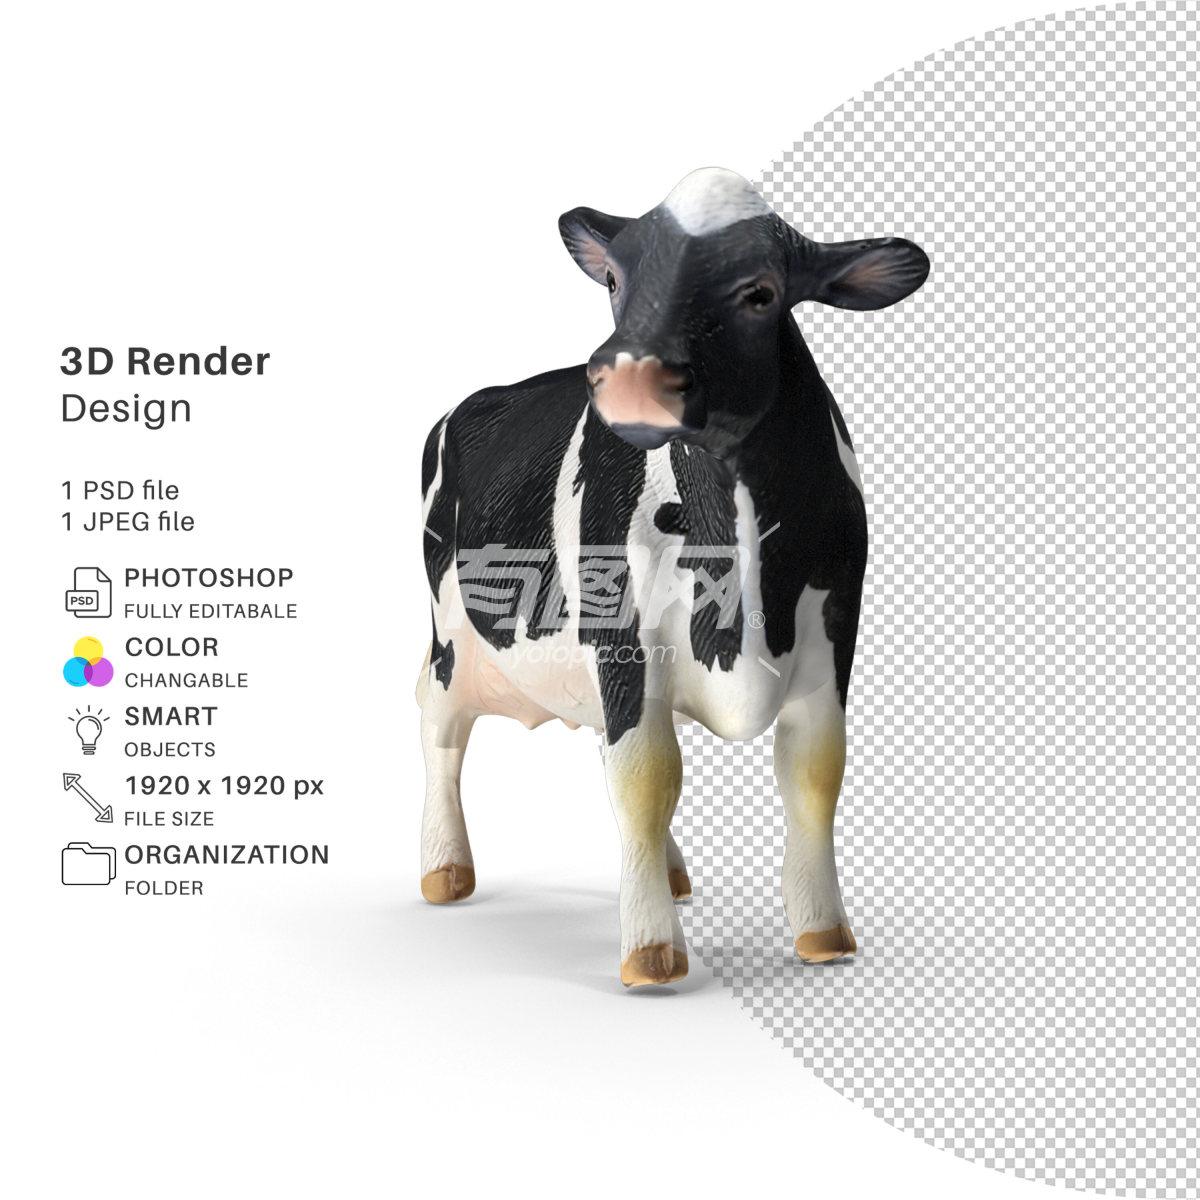 3D渲染的奶牛模型